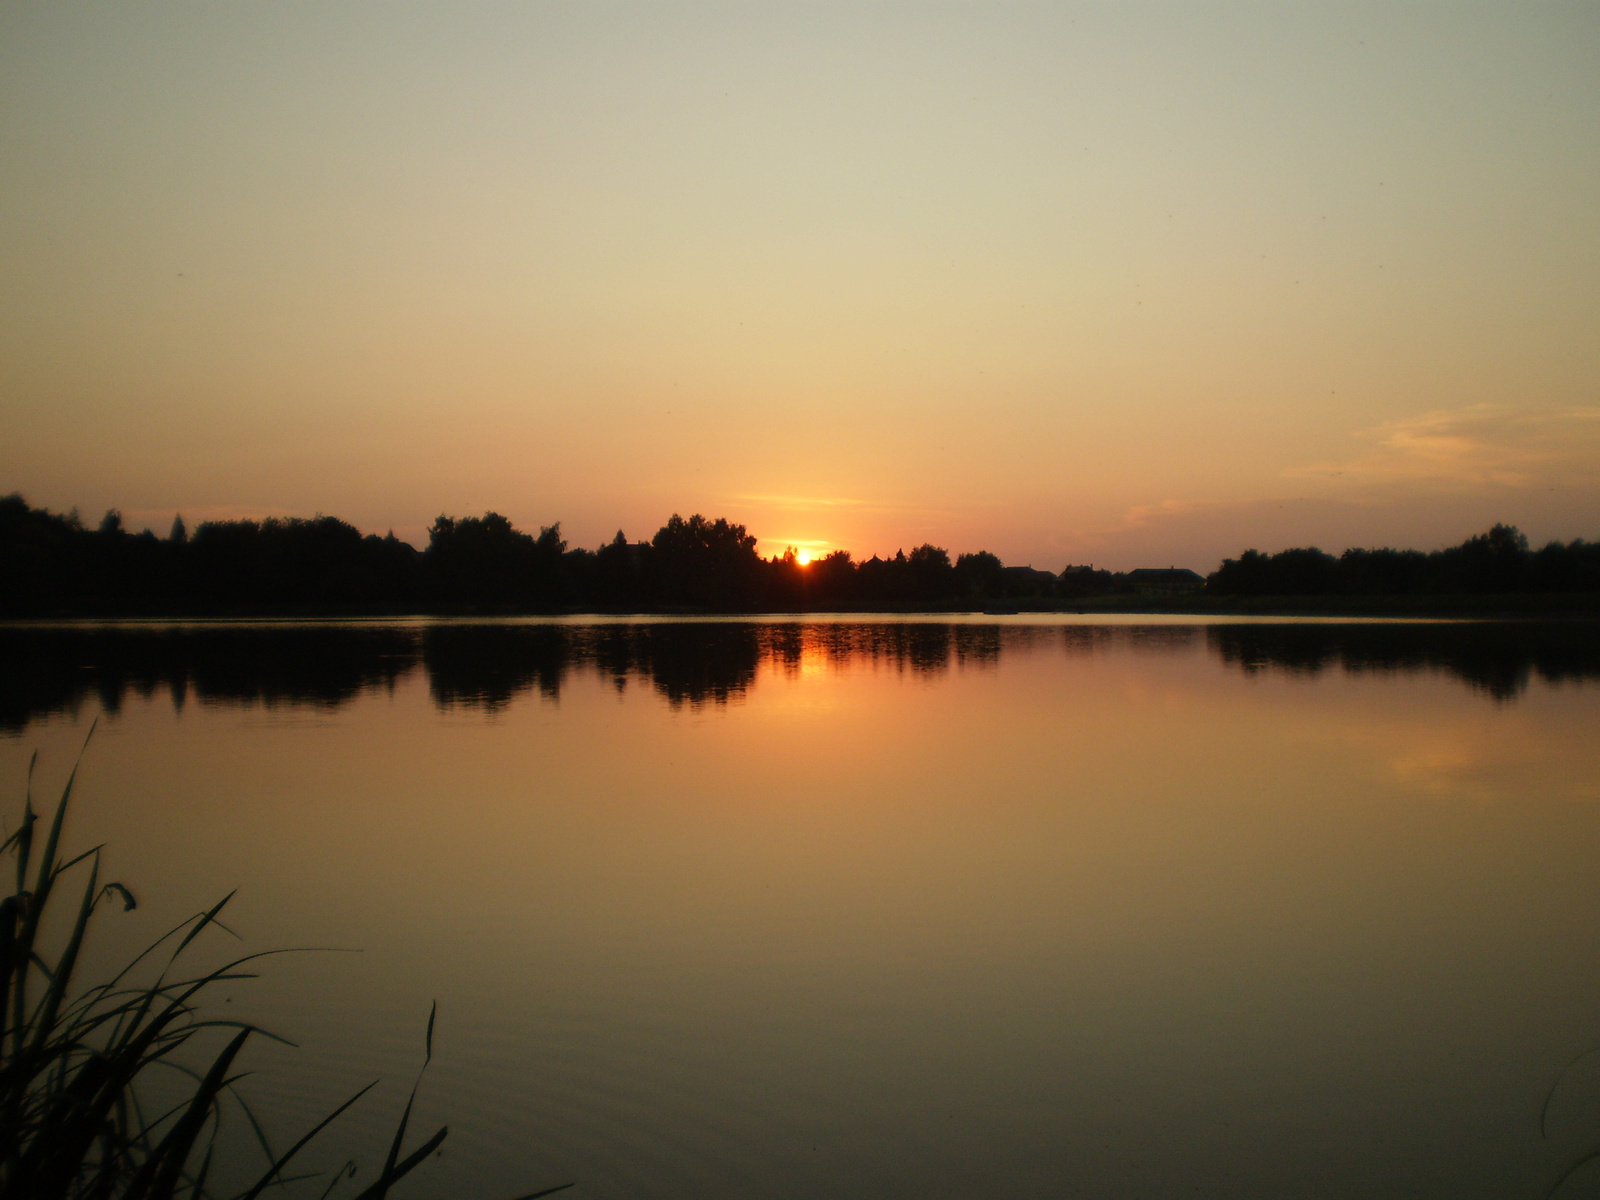 2011.08.31 Malomvölgyi tó naplementében